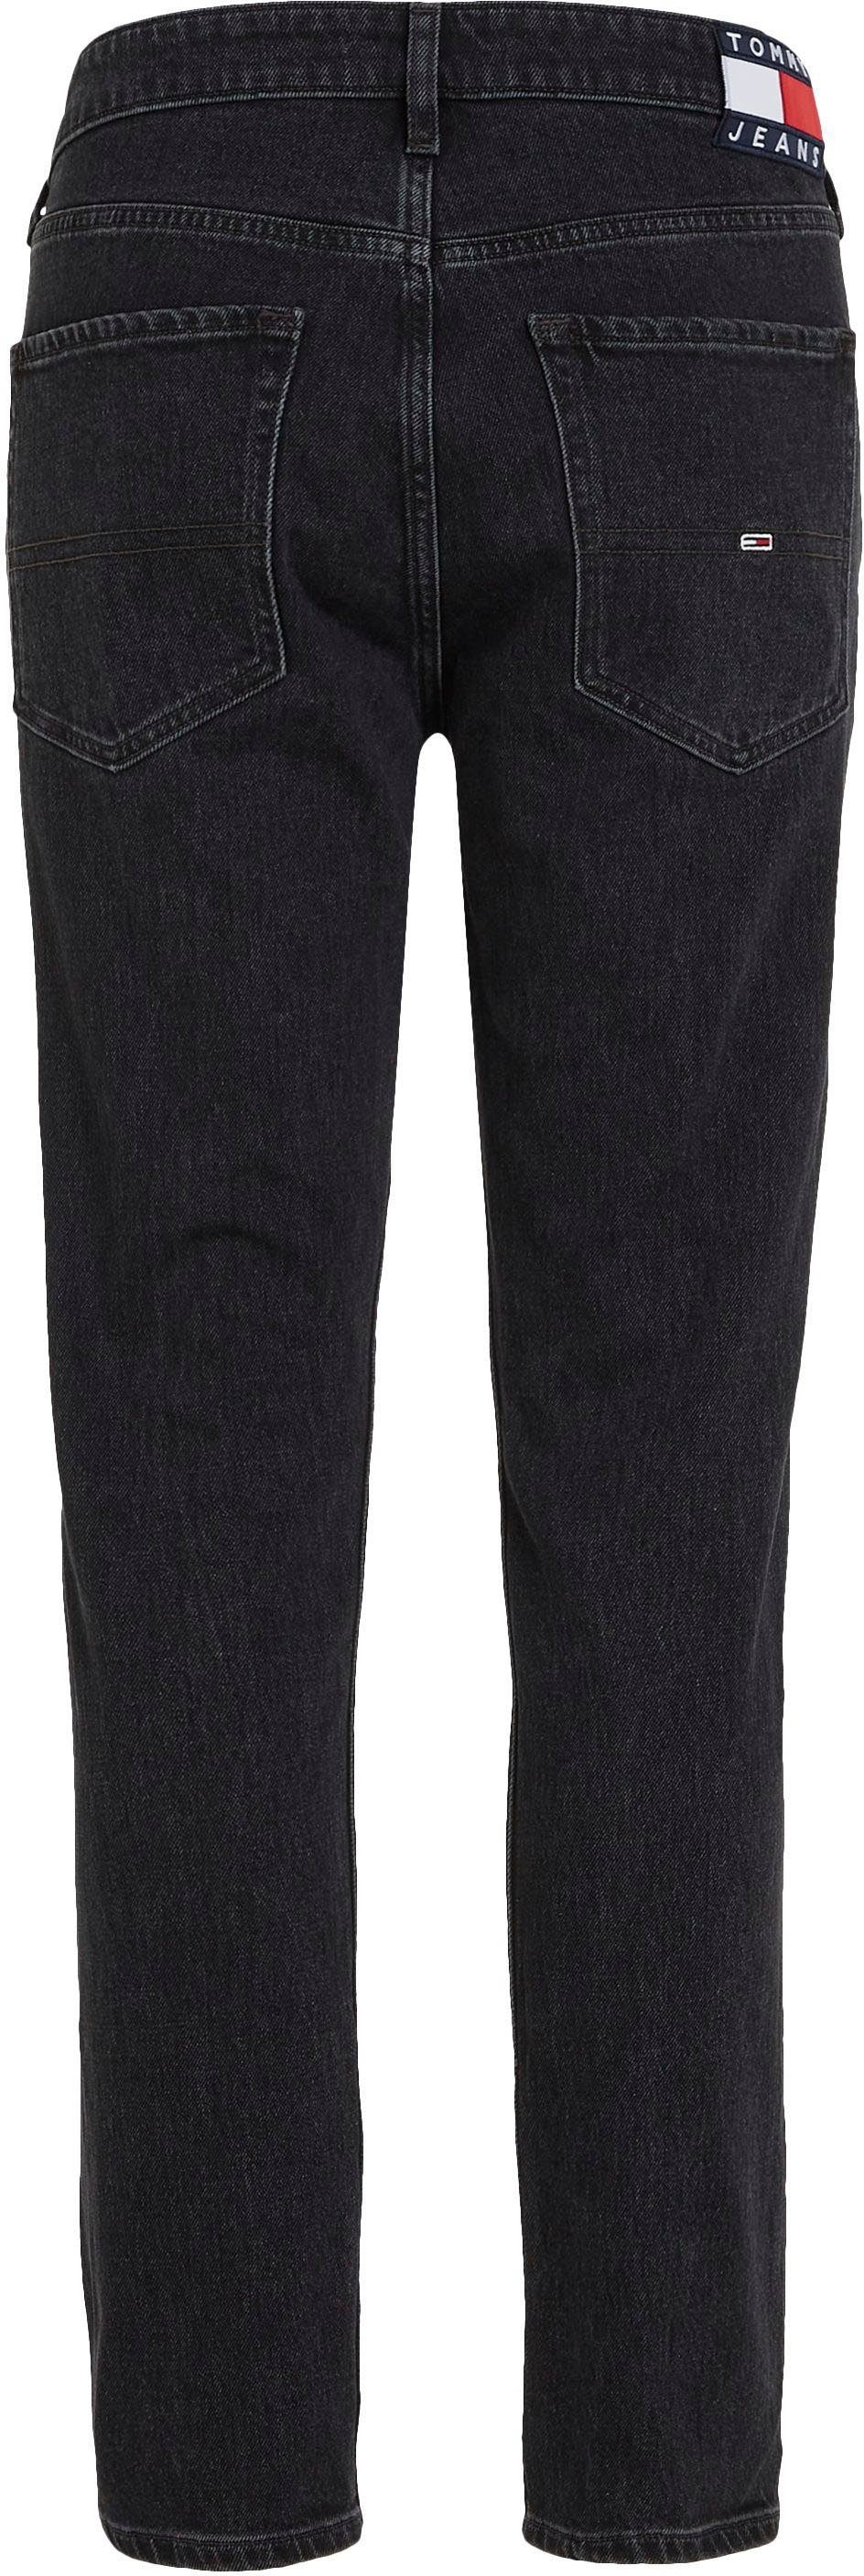 Jeans Denim Black SLIM Tommy SCANTON 5-Pocket-Jeans Y